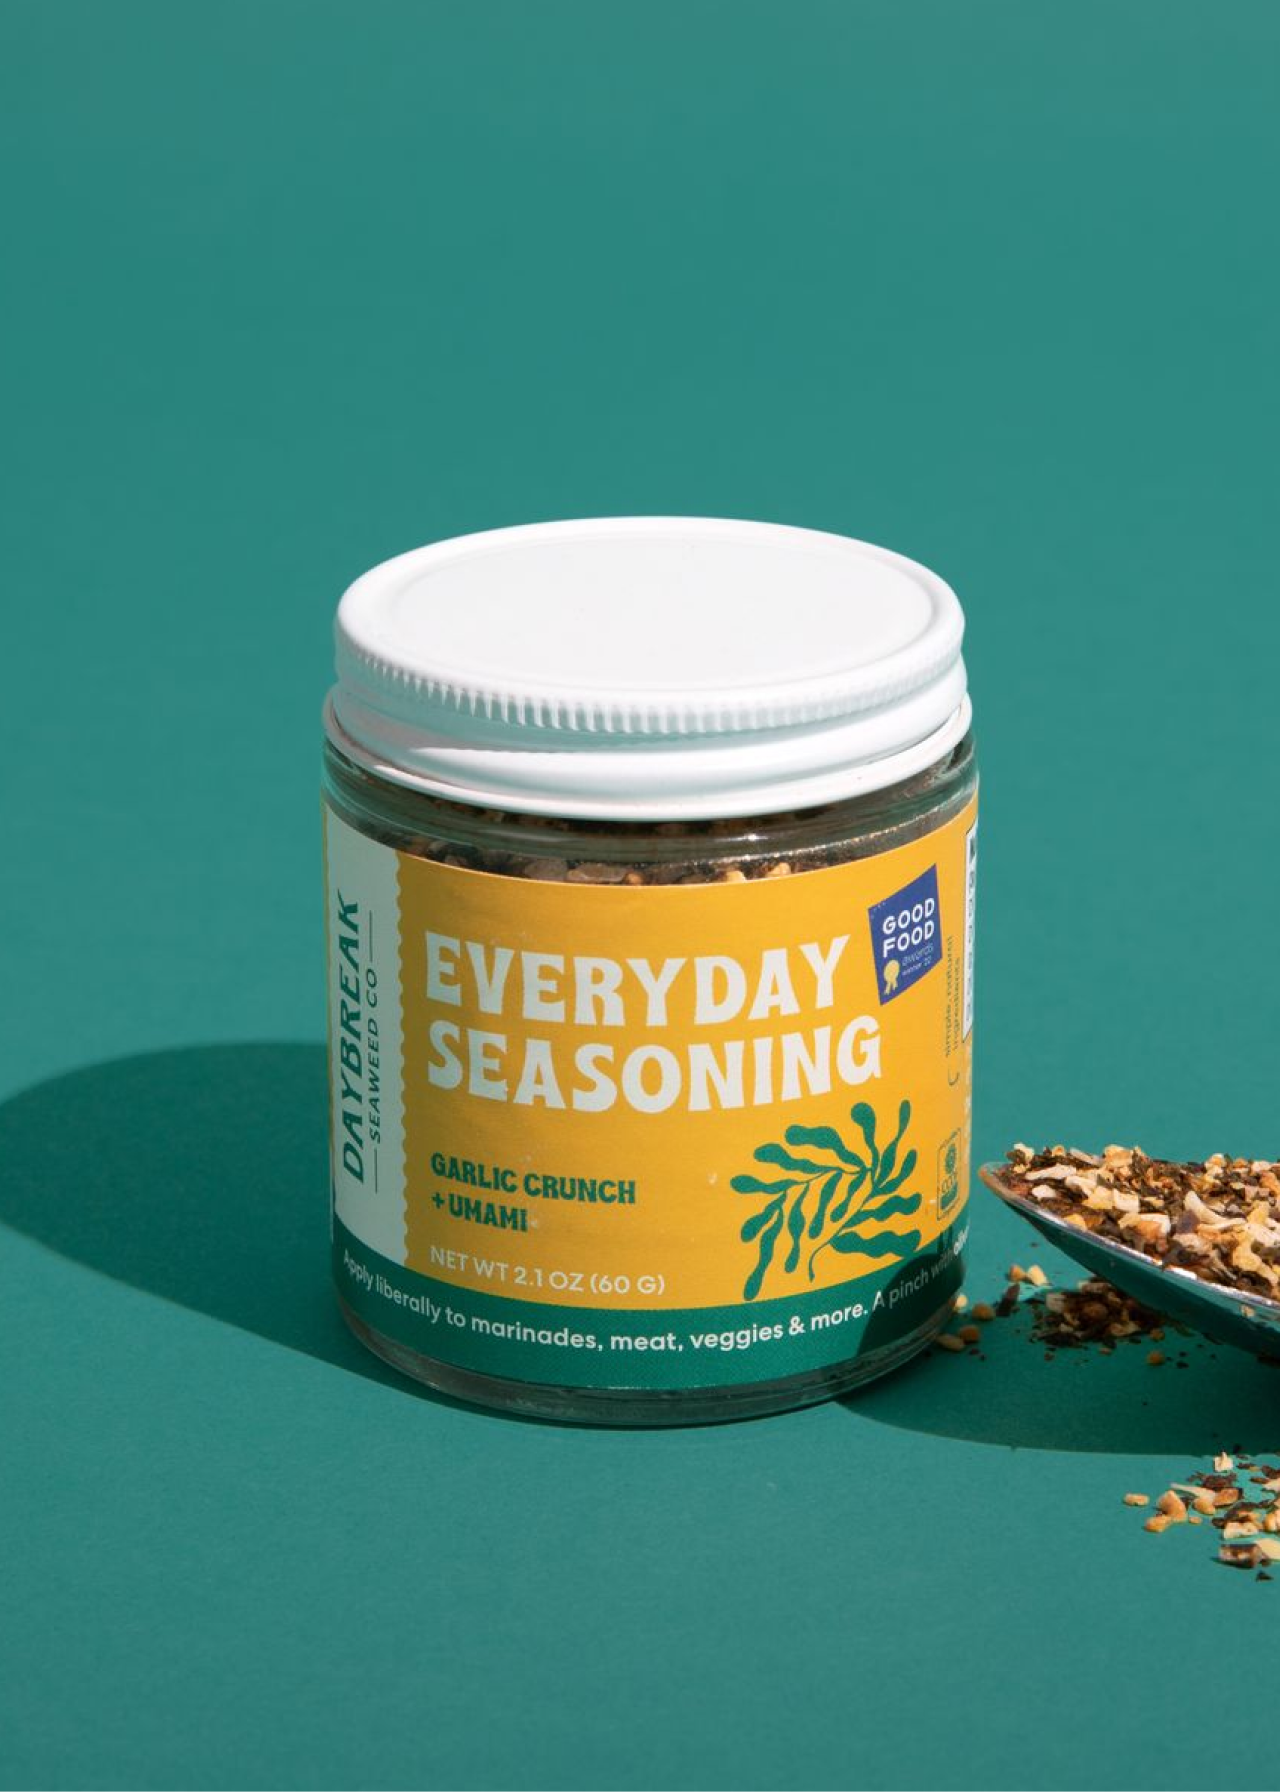 Everyday-seasoning-packaging-design.png